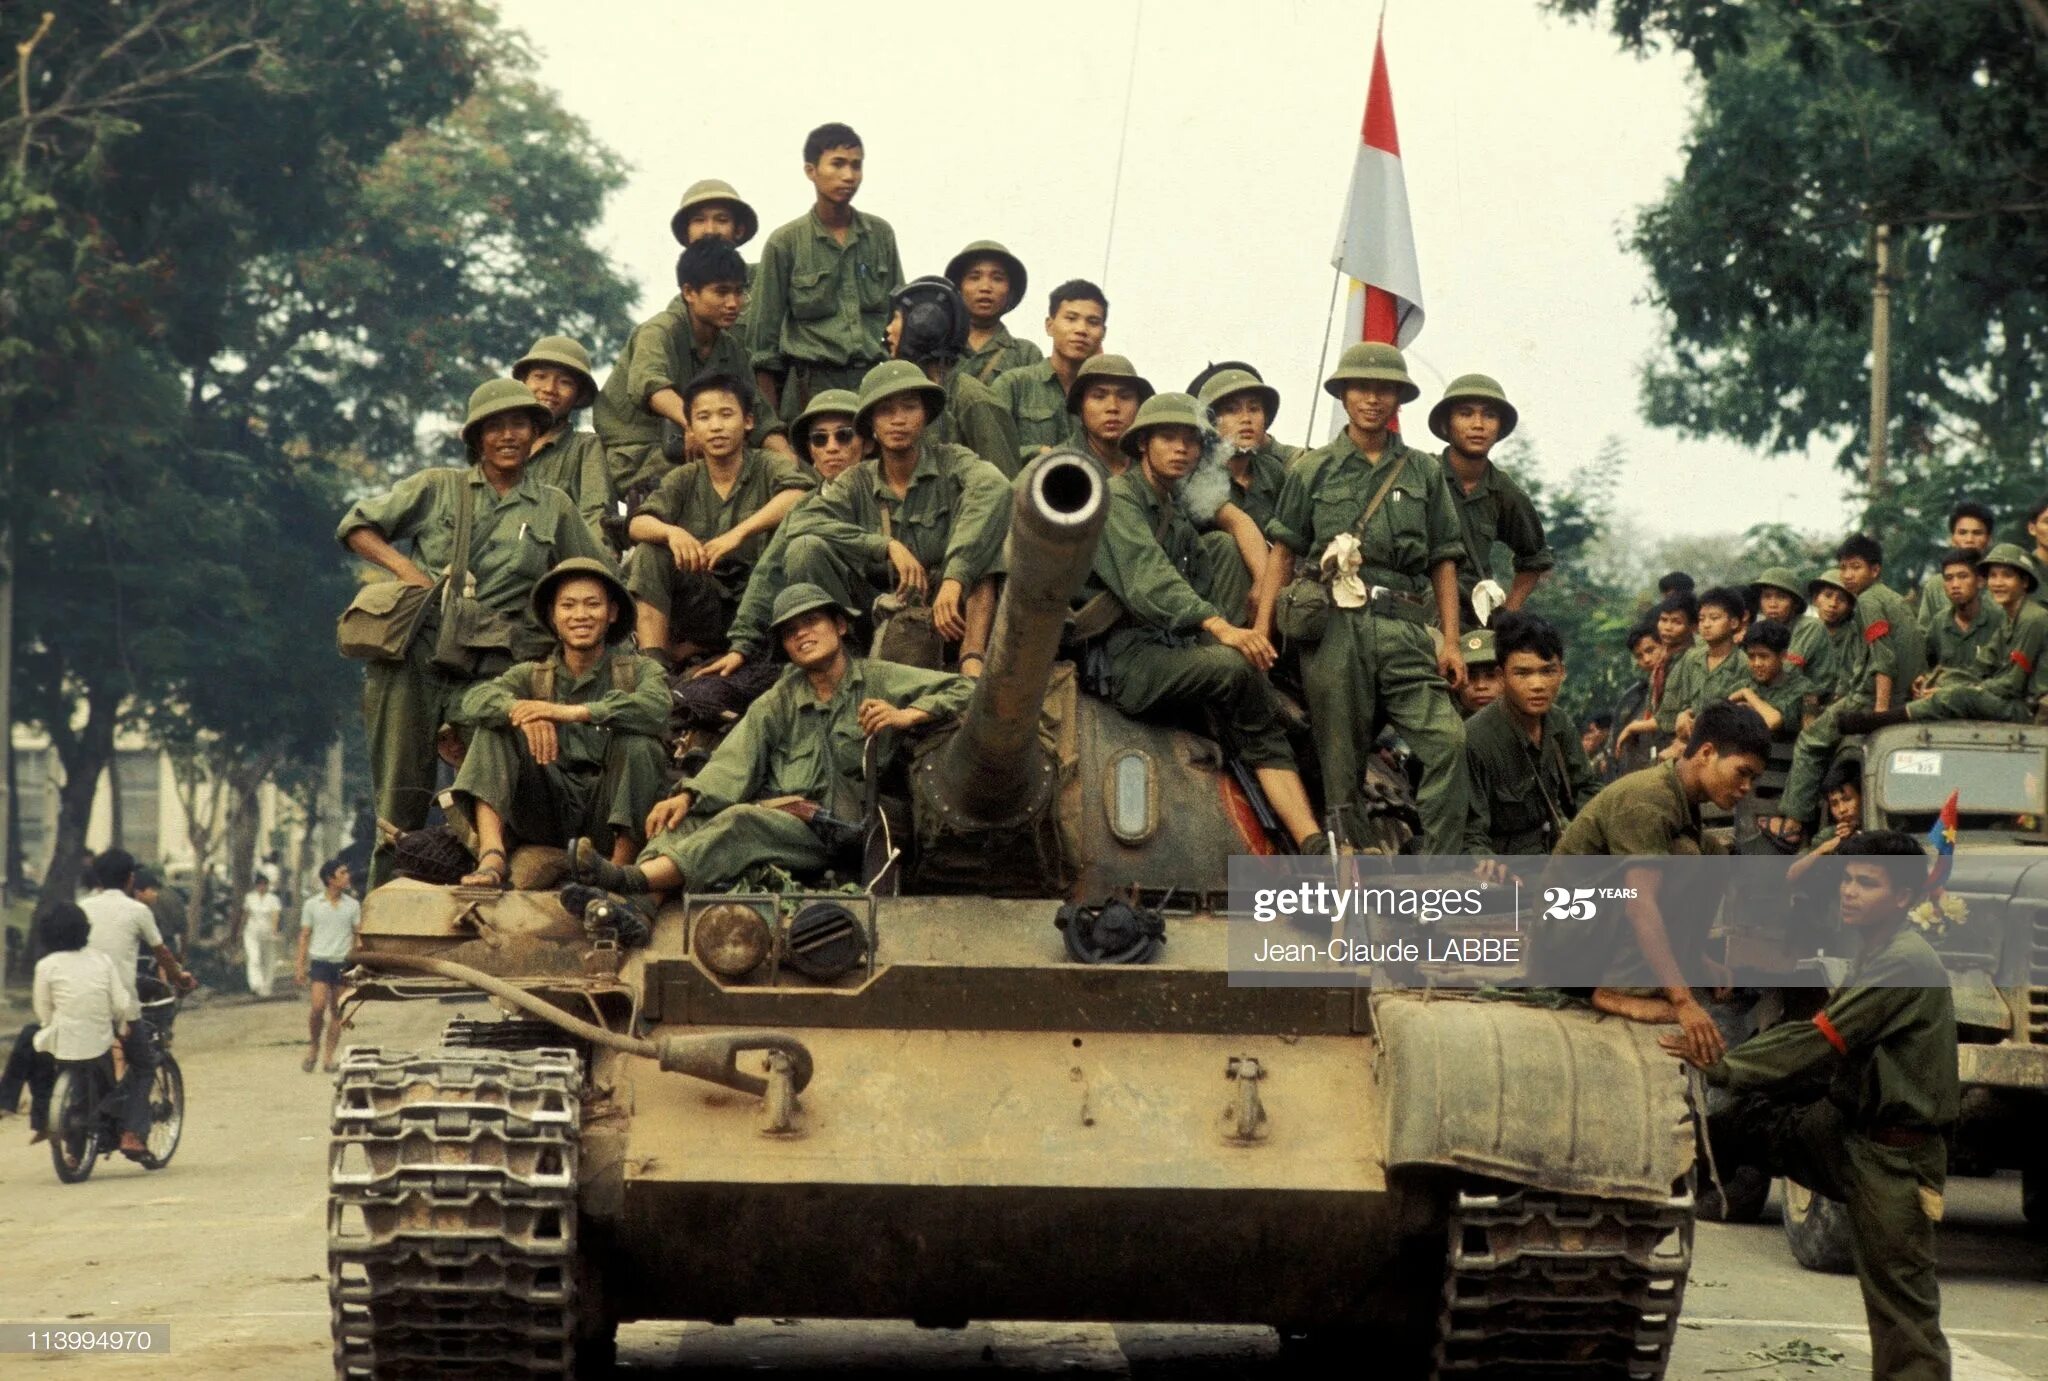 30 апреля 21 года. Вьетнамская армия в Сайгоне 1975. Национальный фронт освобождения Южного Вьетнама (НФОЮВ). Сайгон 30 апреля 1975.